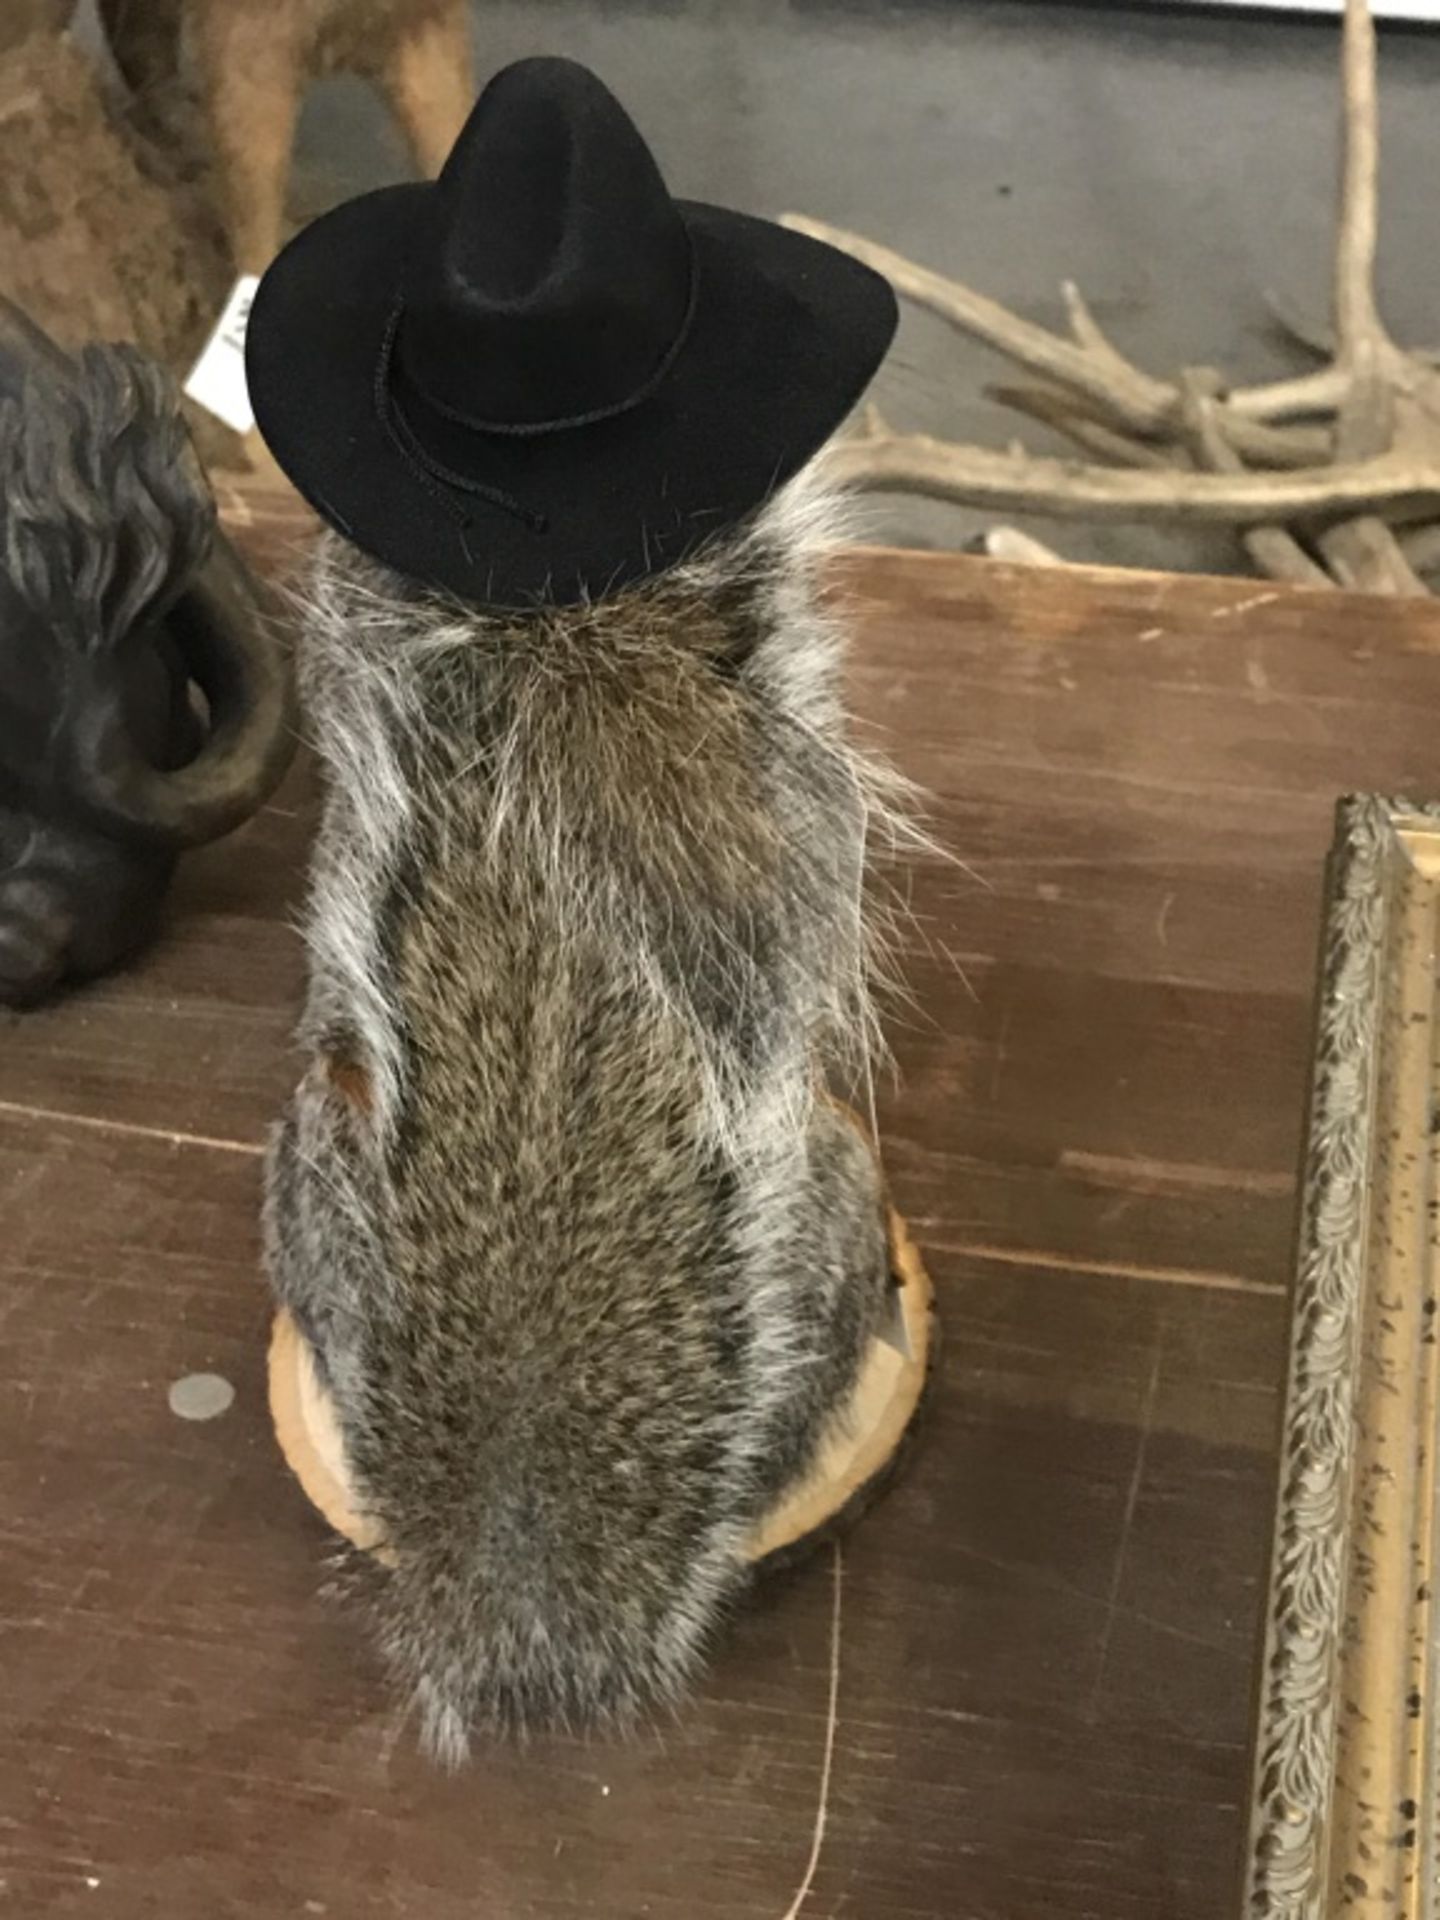 Cowboy Squirrel - Image 14 of 17